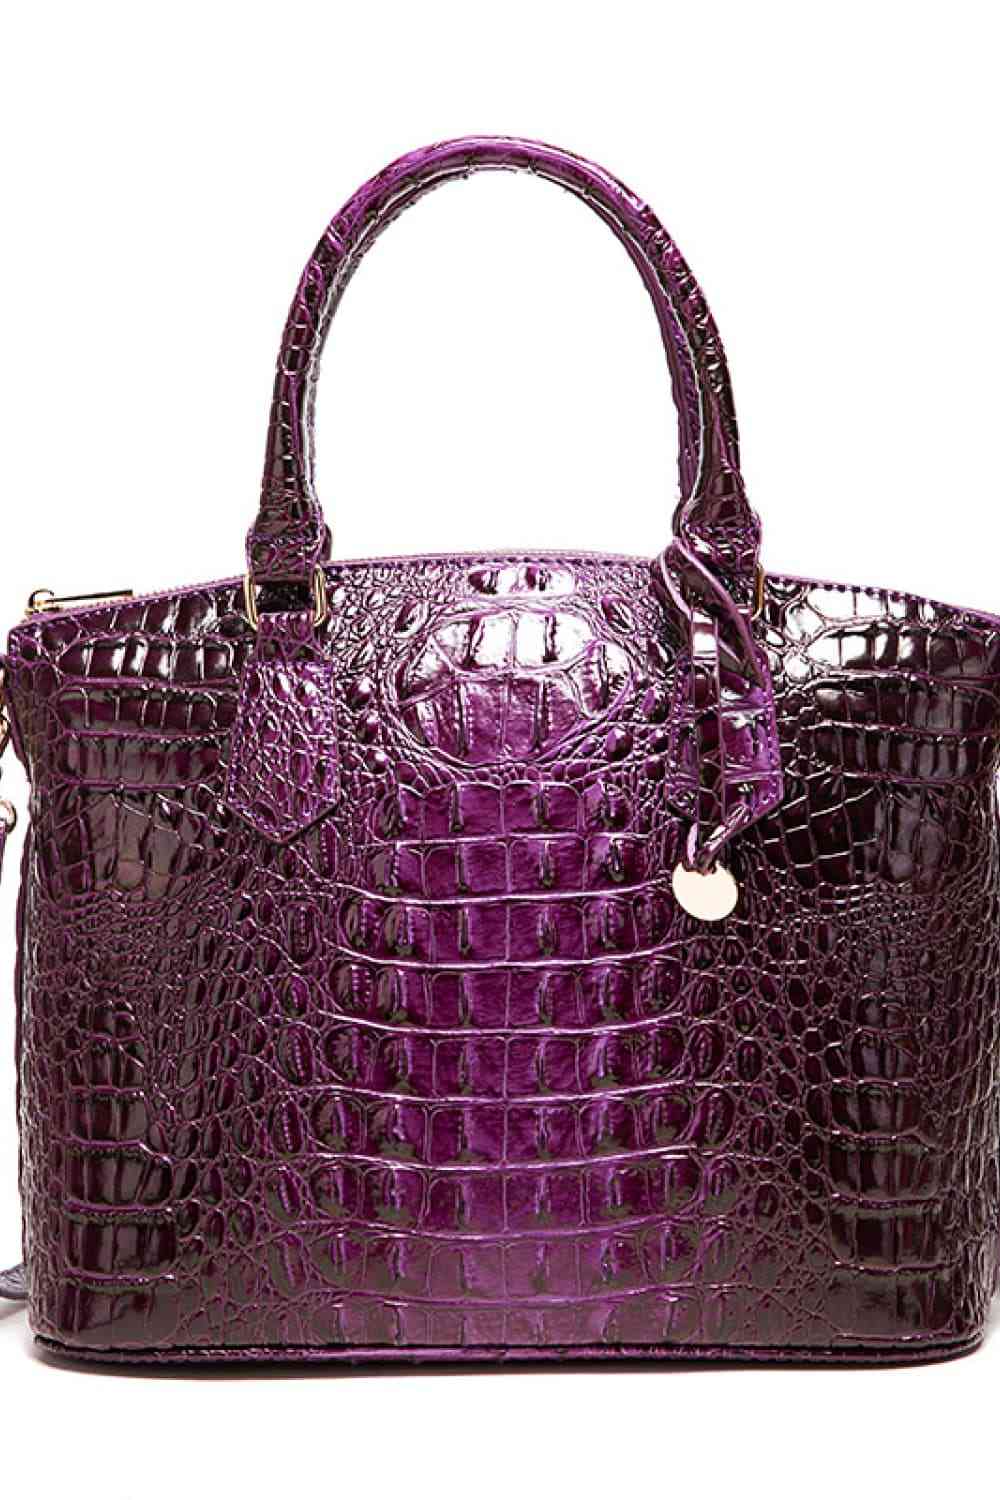 PU Leather Handbag - Babbazon handbag